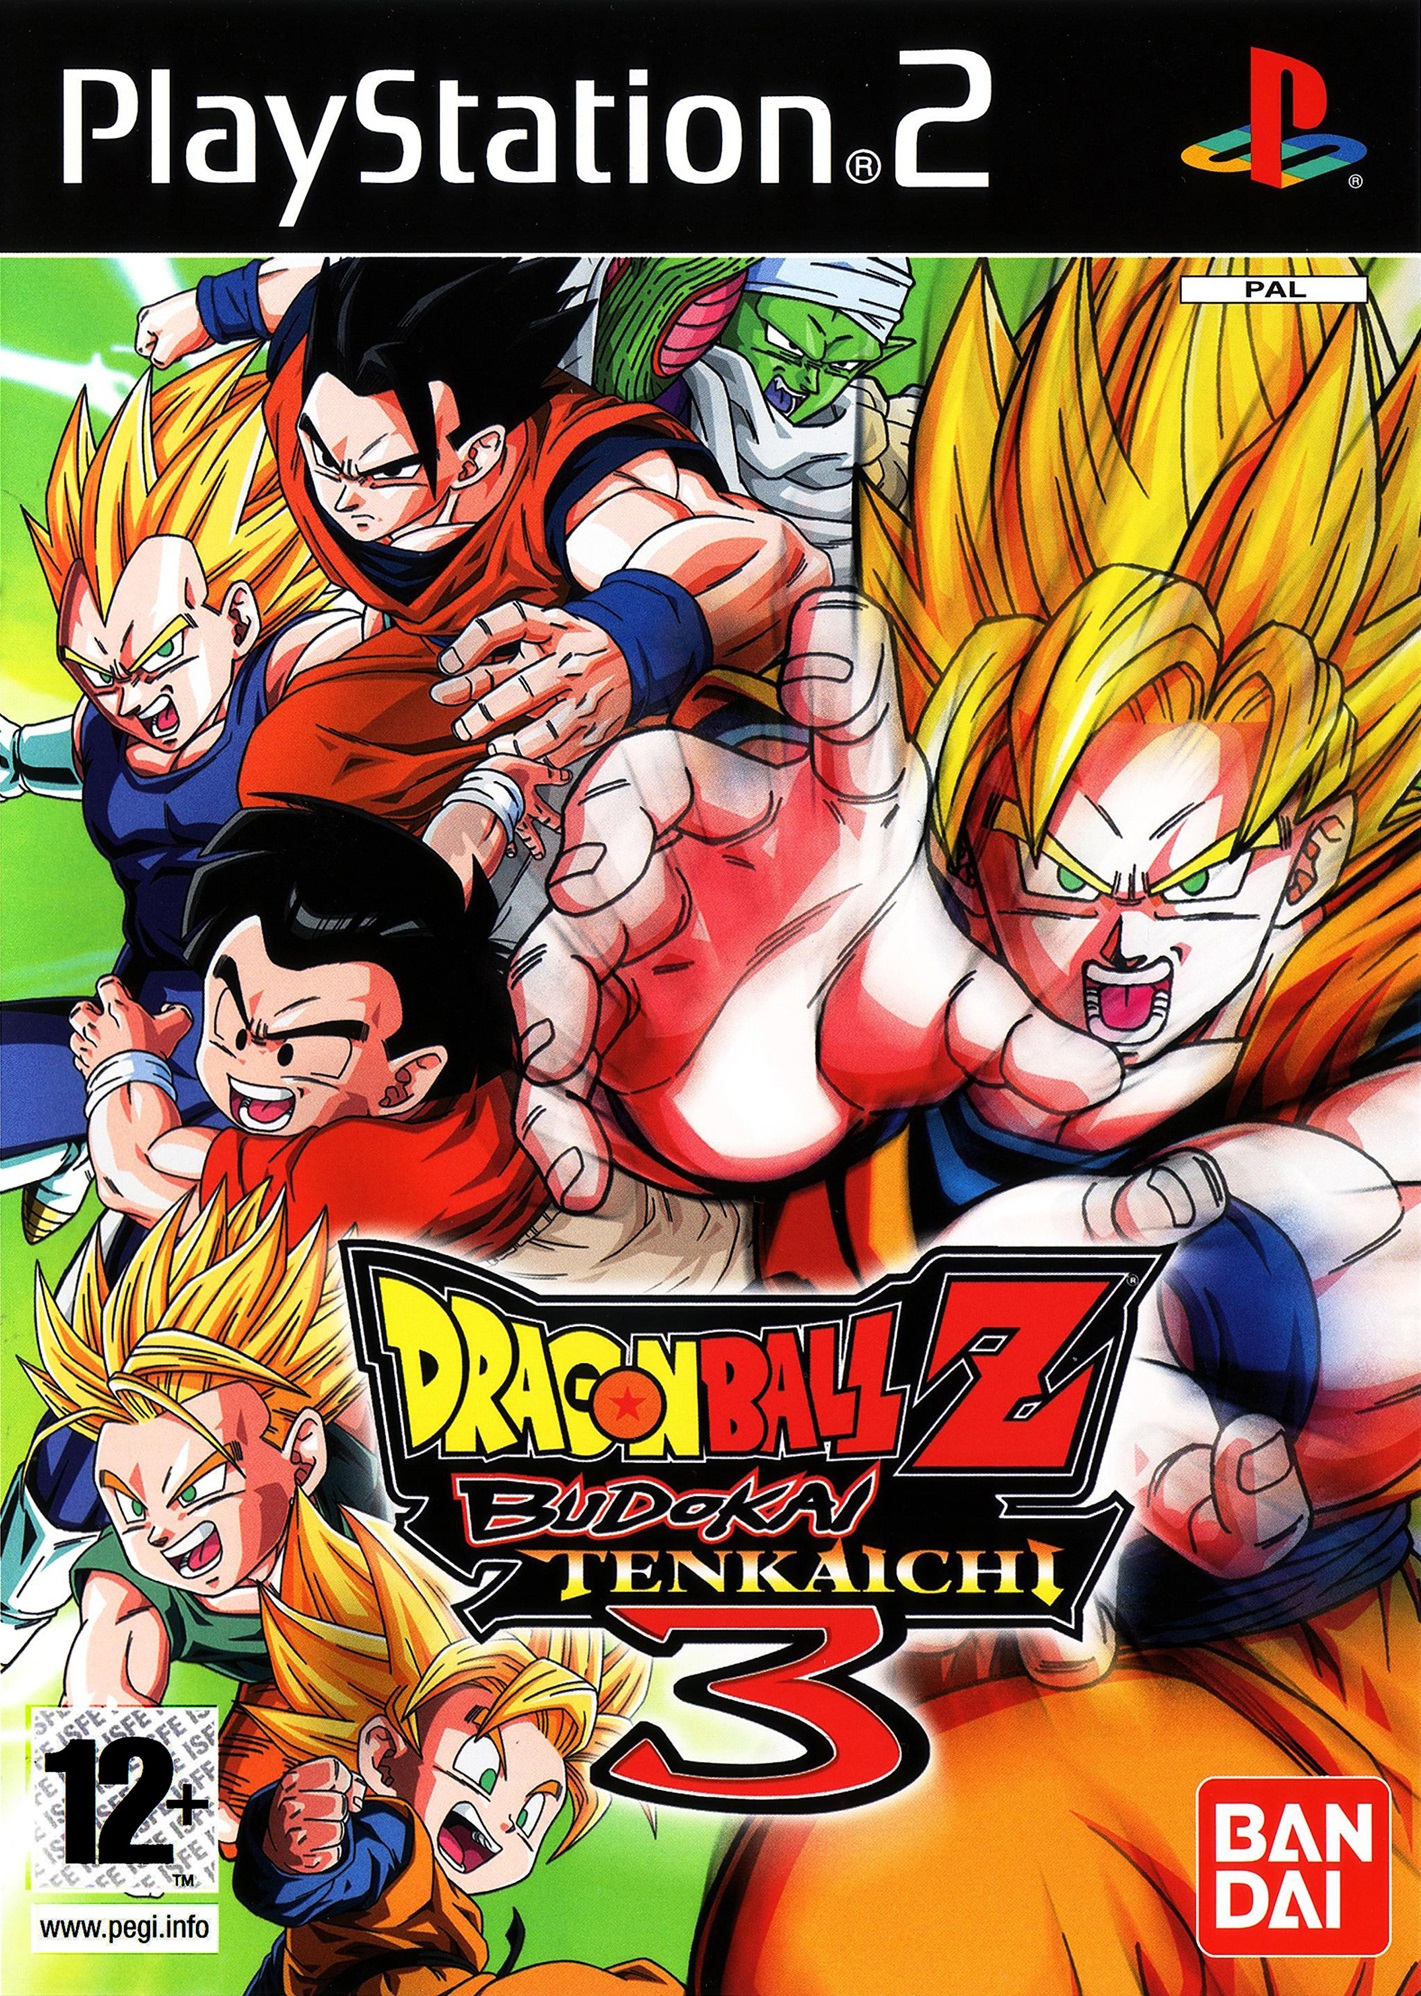 Dragon Ball Z Budokai Tenkaichi 3 *PC*ps2*Will*Xbox